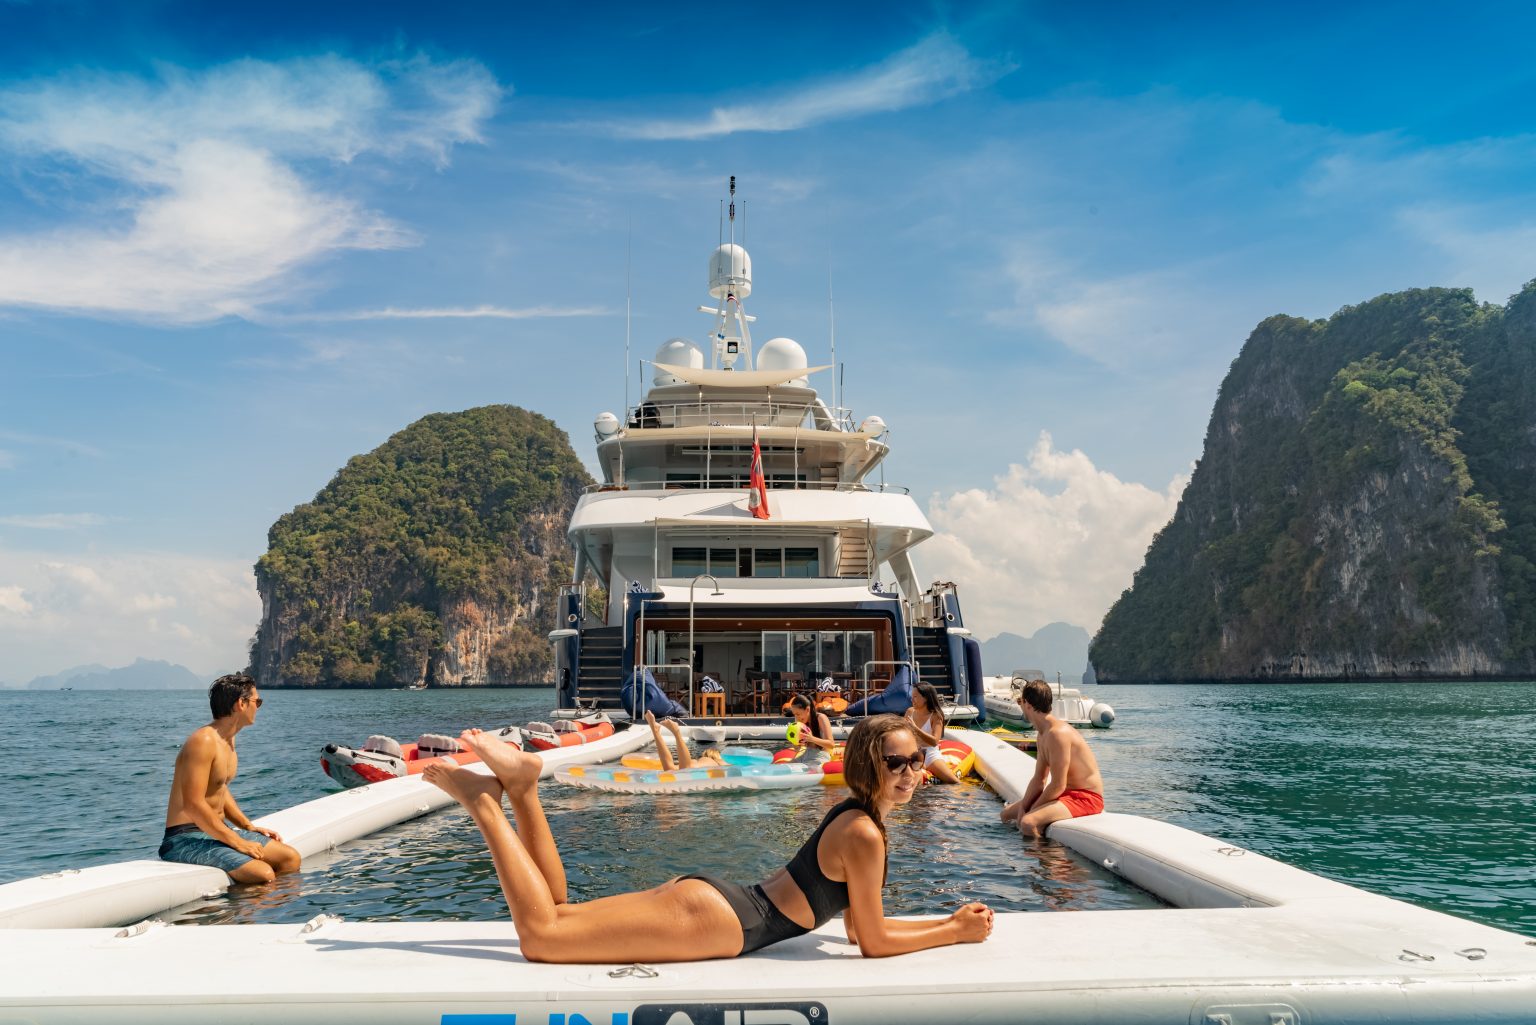 Superyacht Lady Azul using Funair pool in Thailand